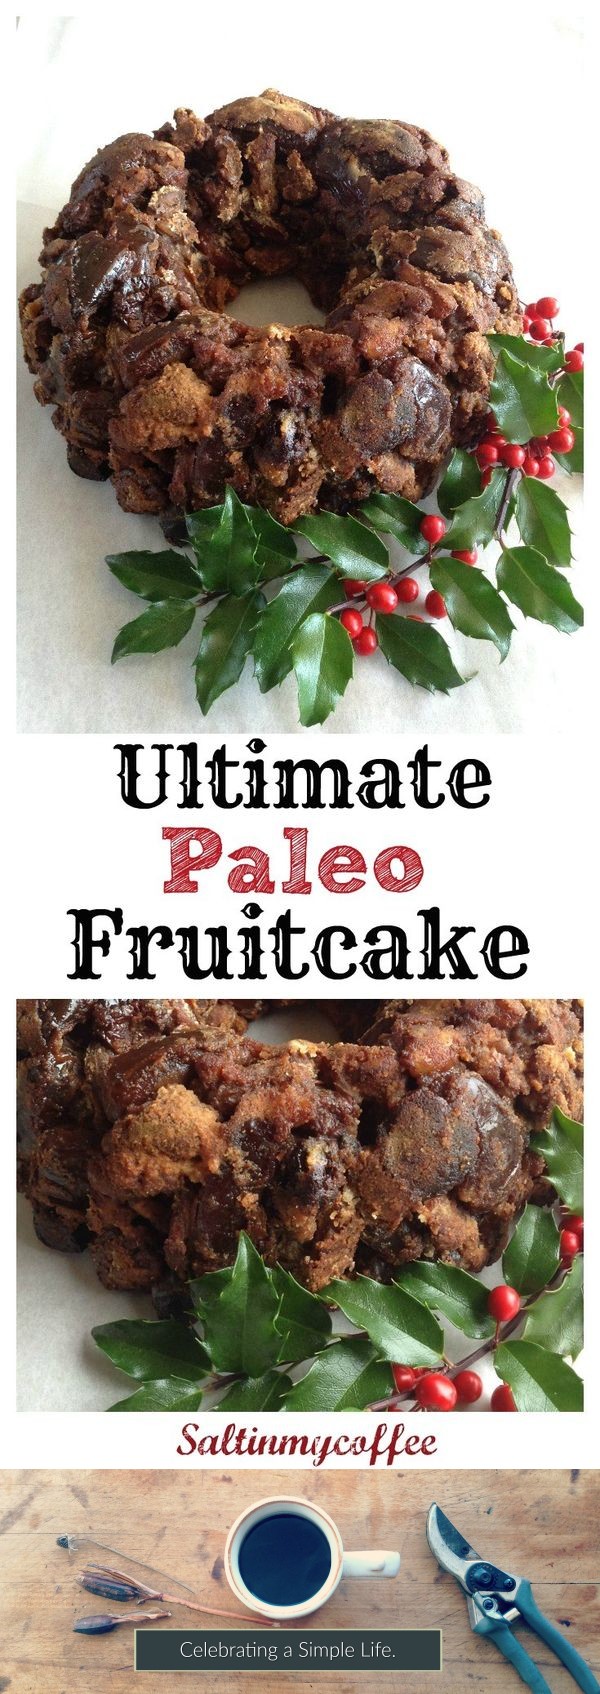 Ultimate Paleo Fruitcake